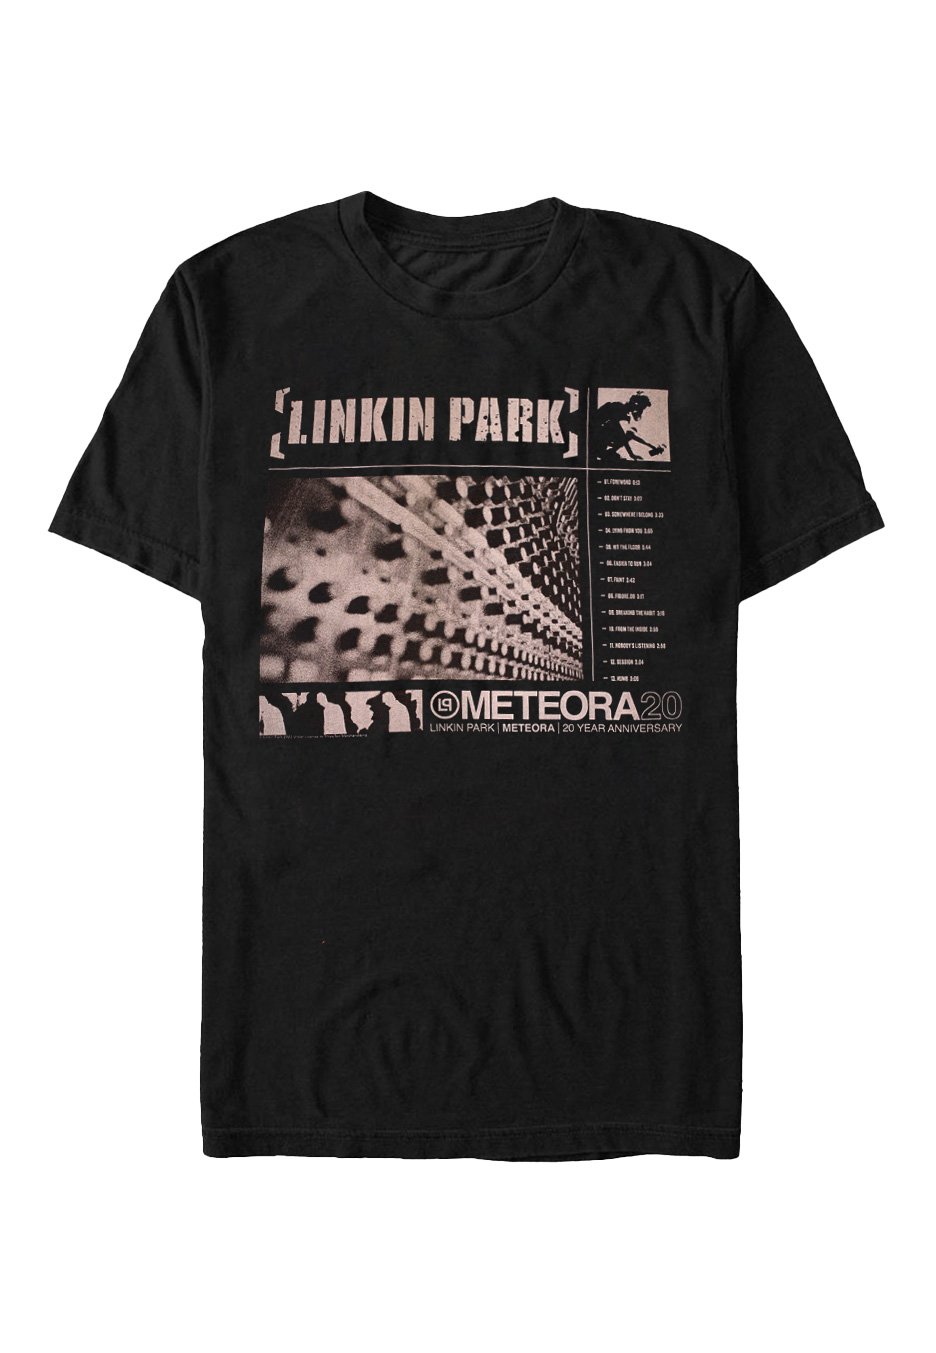 Linkin Park - Meteora Sound Board - T-Shirt